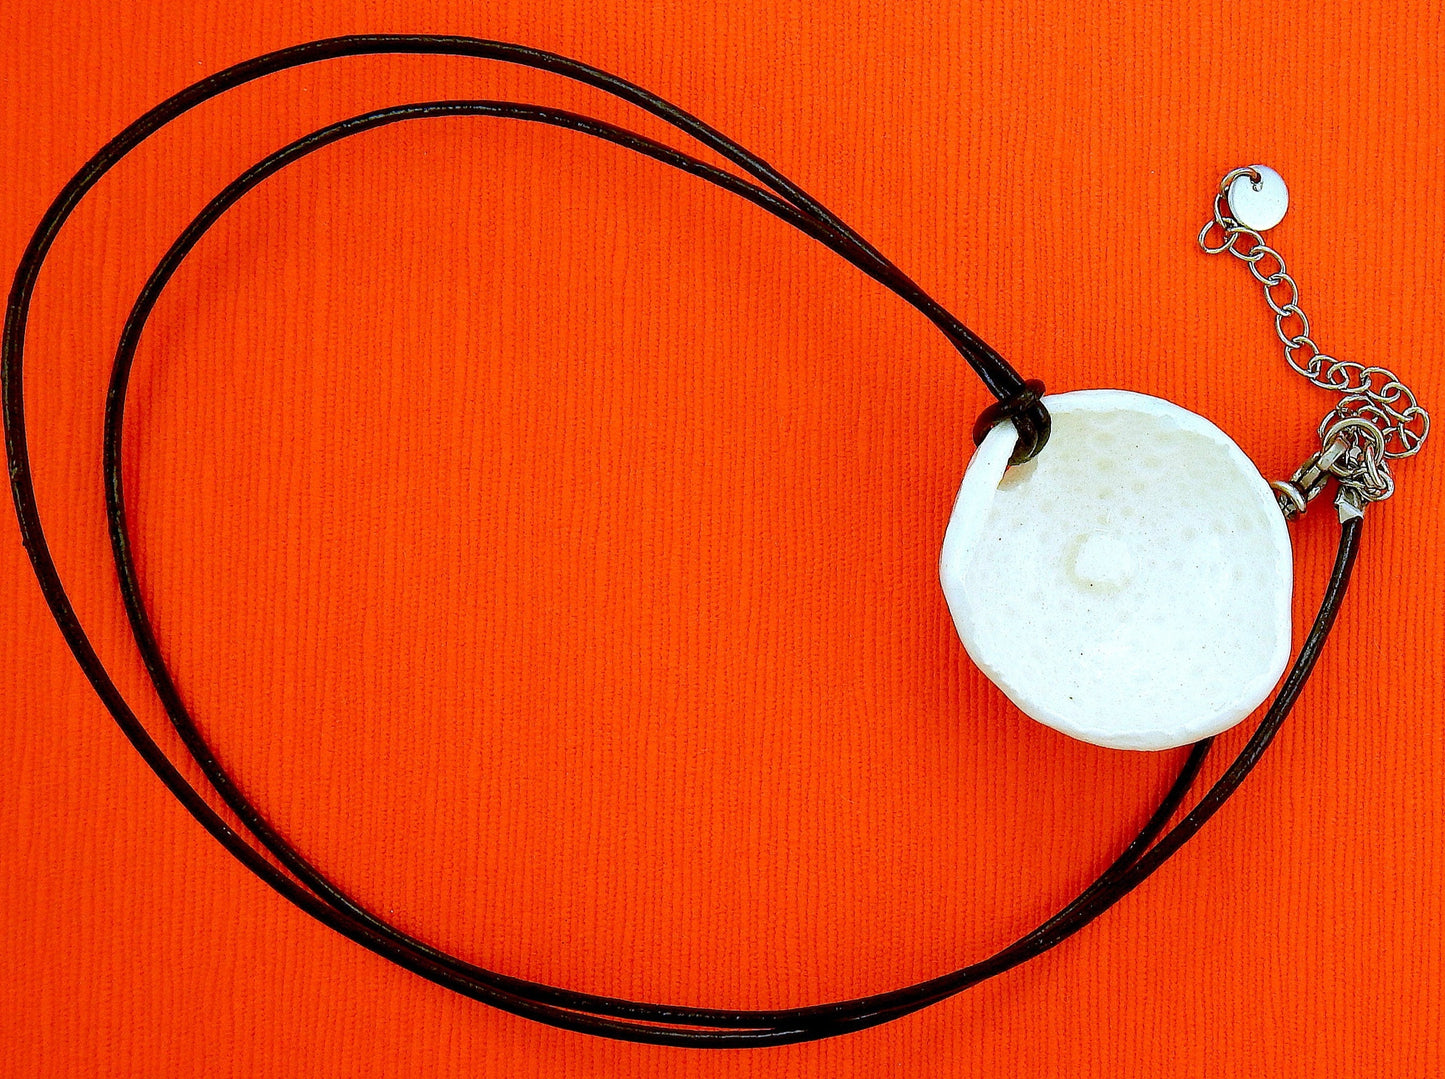 Collier 24 po avec pendentif demi-oursin de faïence blanc crème fait à la main à Montréal, cordon de cuir noir, fermoir acier inoxydable